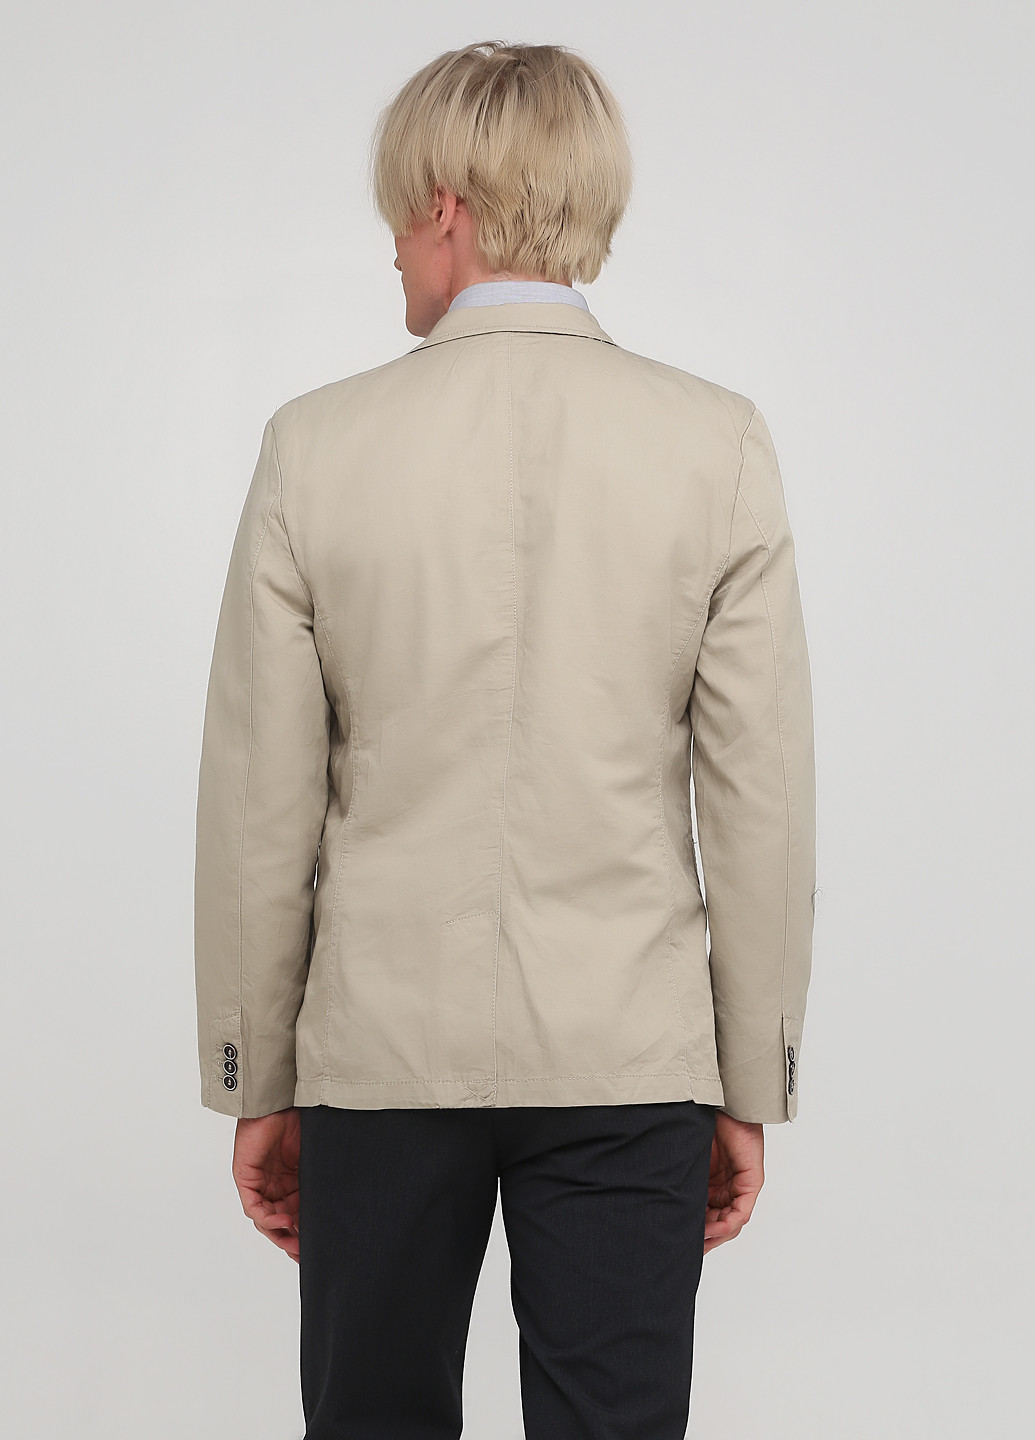 Пиджак H&M однобортный однотонный бежевый деловой хлопок, лен